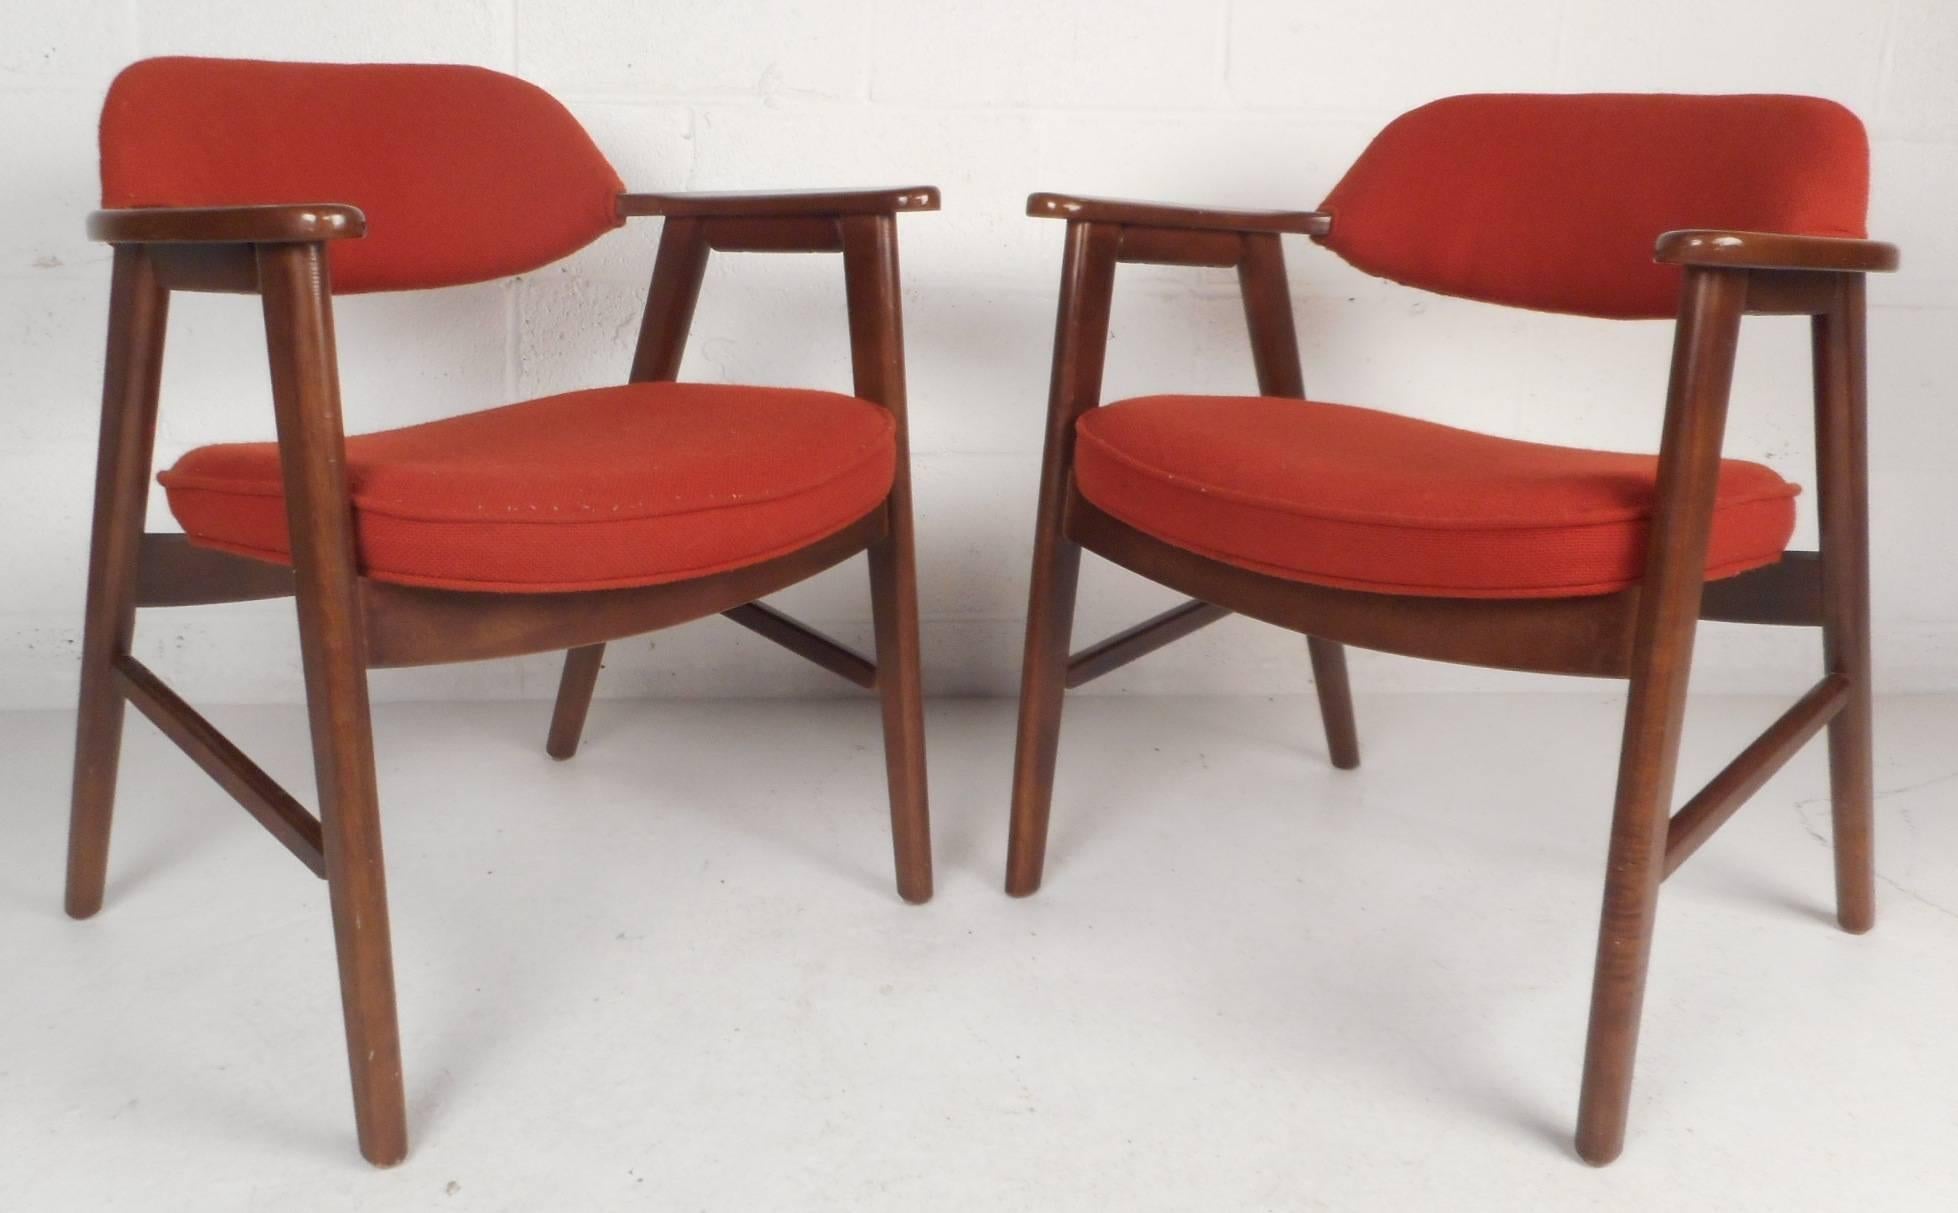 Cette magnifique paire de chaises d'appoint vintage modernes est dotée d'un cadre solide en acajou foncé et d'un rembourrage rouge en peluche. Le design unique présente des accoudoirs découpés et des pieds arrière inclinés. Cette paire de fauteuils